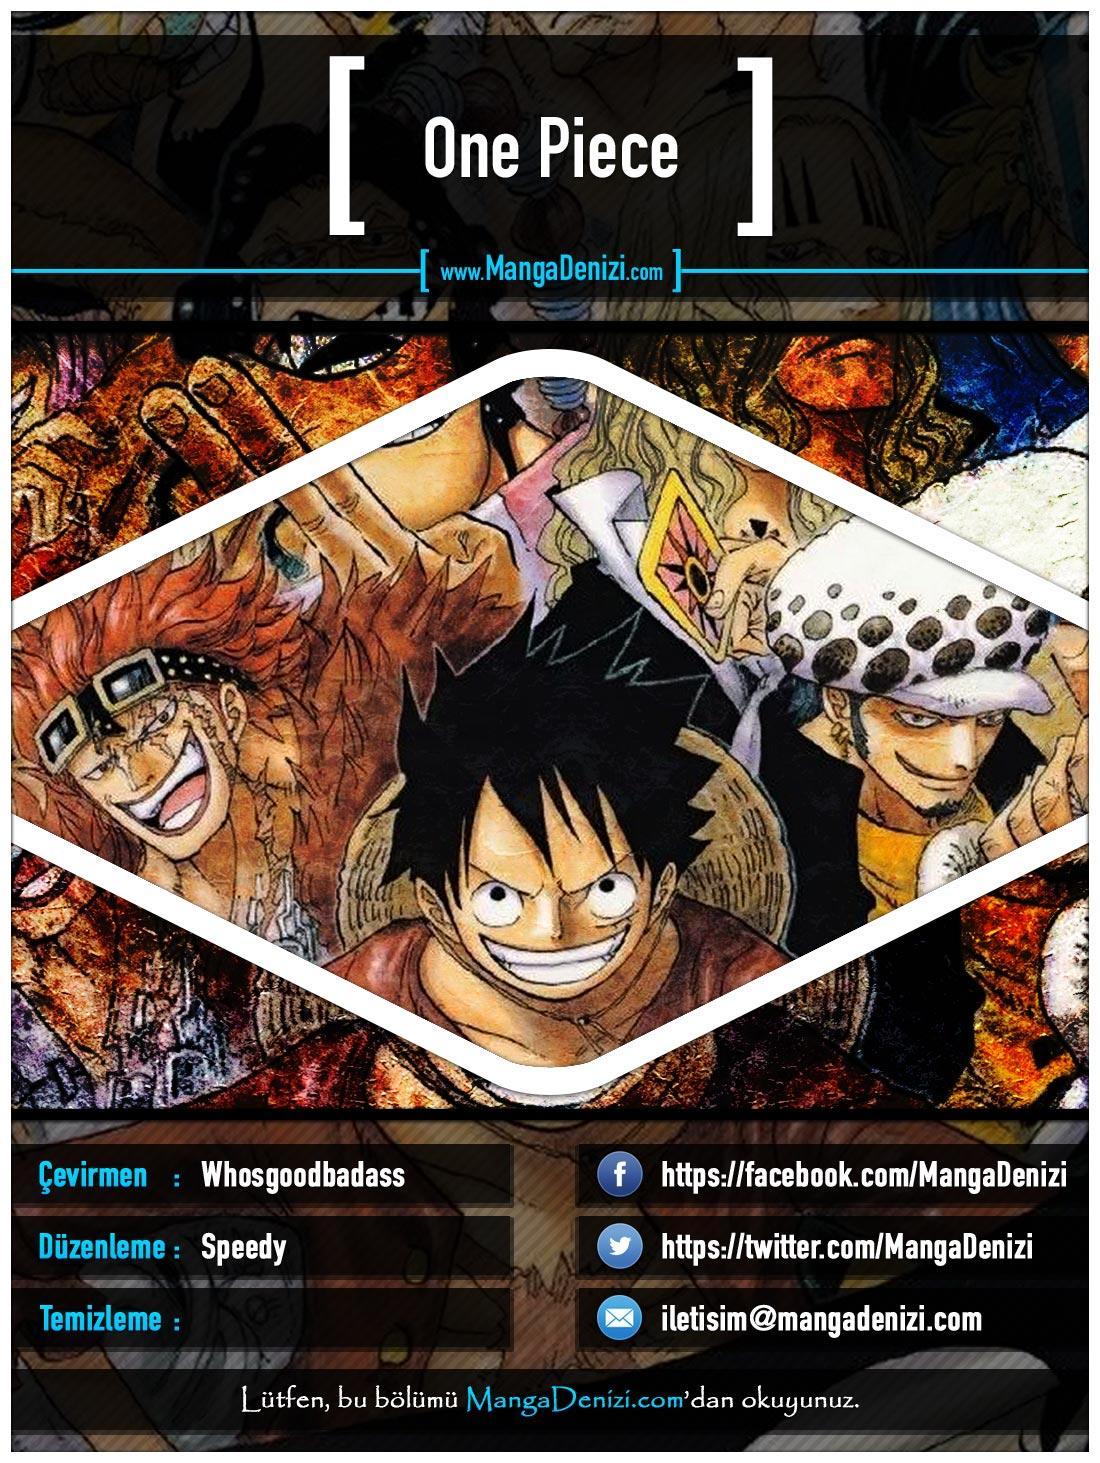 One Piece [Renkli] mangasının 0504 bölümünün 1. sayfasını okuyorsunuz.